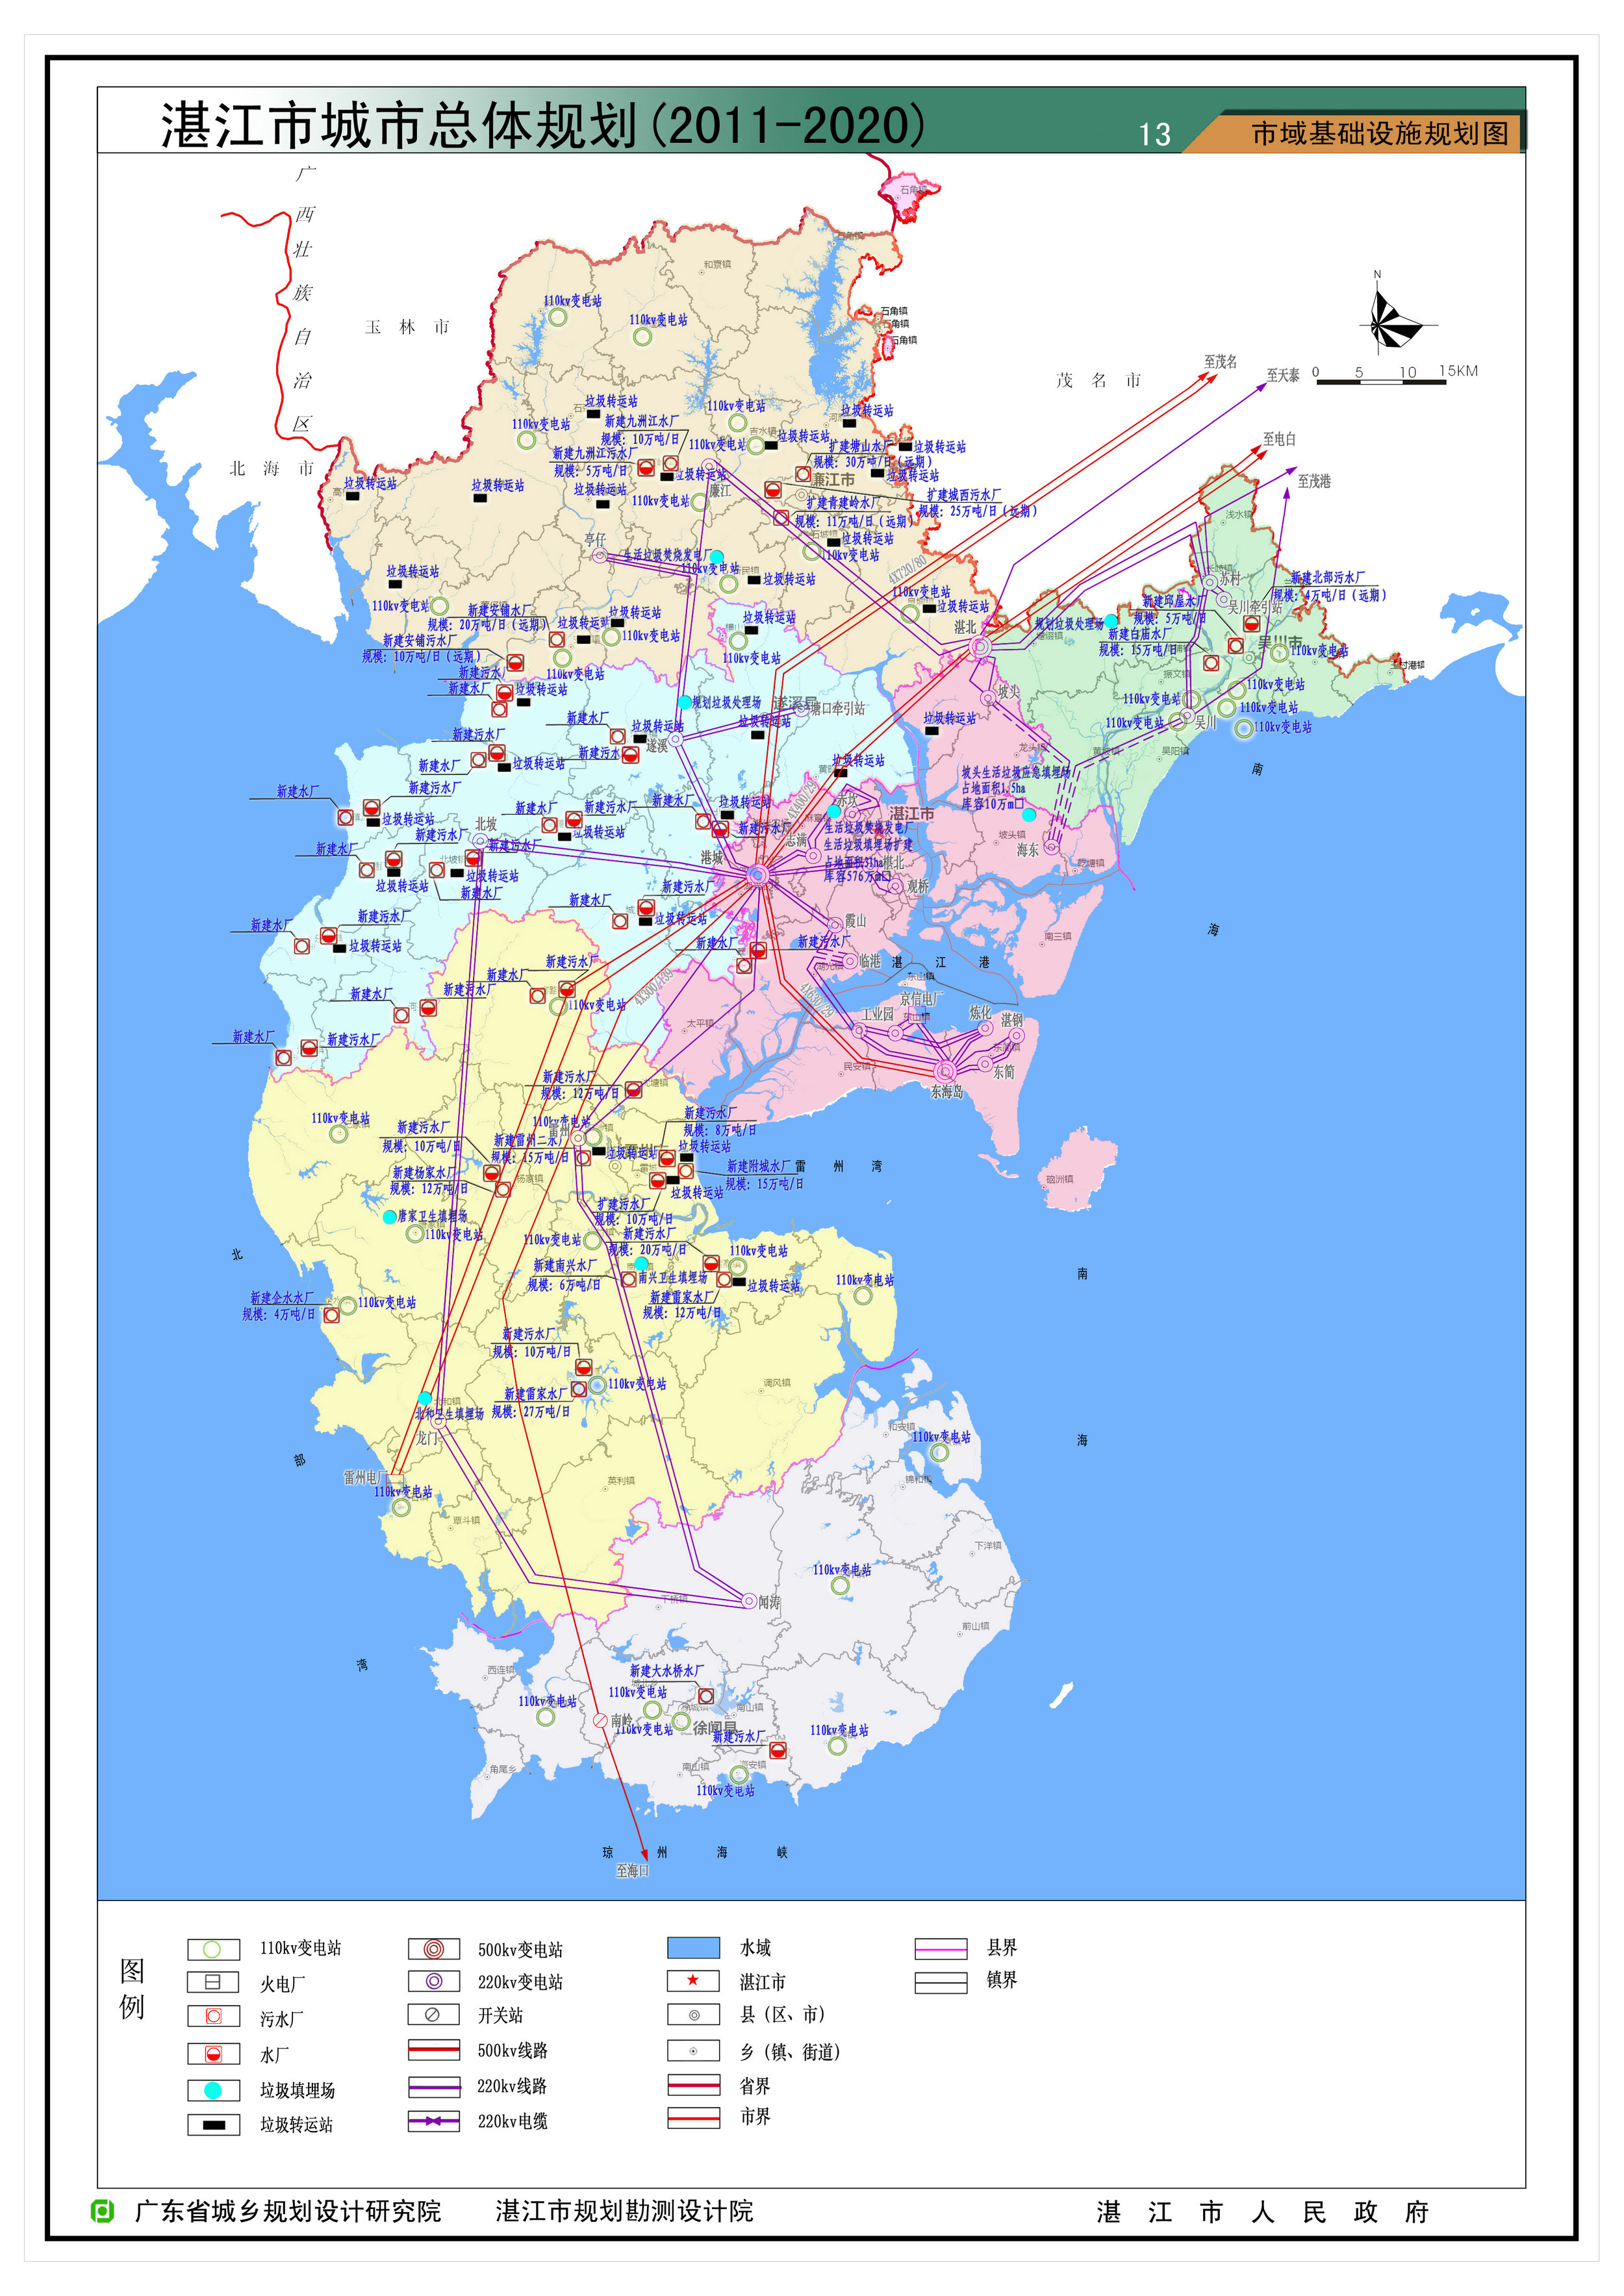 湛江地图|湛江地图全图高清版大图片|旅途风景图片网|www.visacits.com